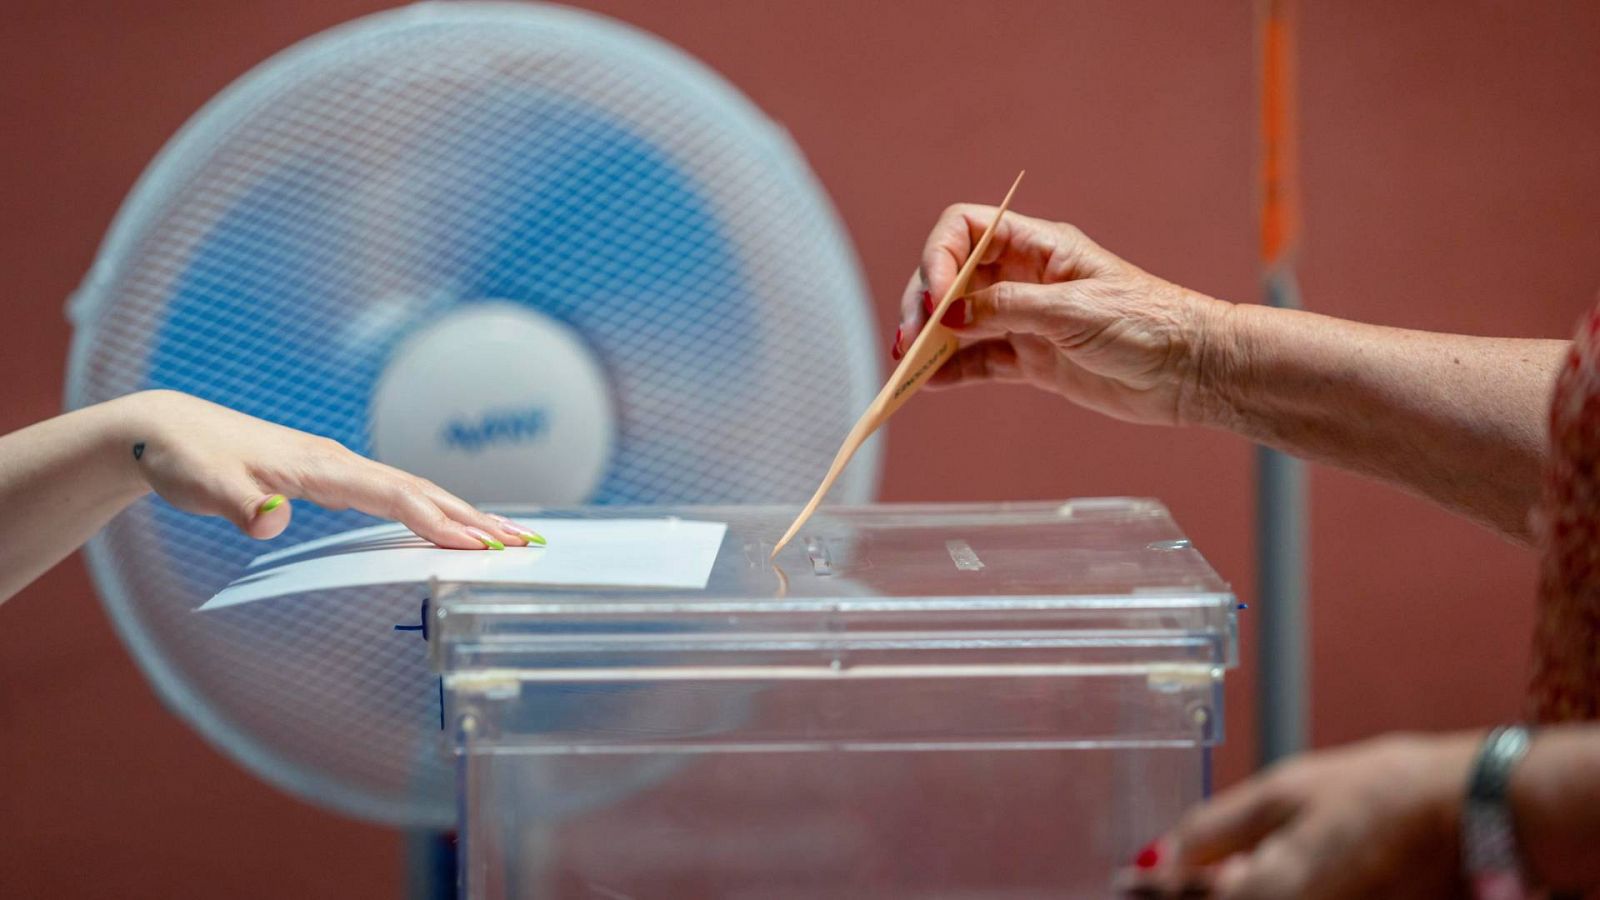 Voto CERA en las elecciones generales: una persona depositando su voto